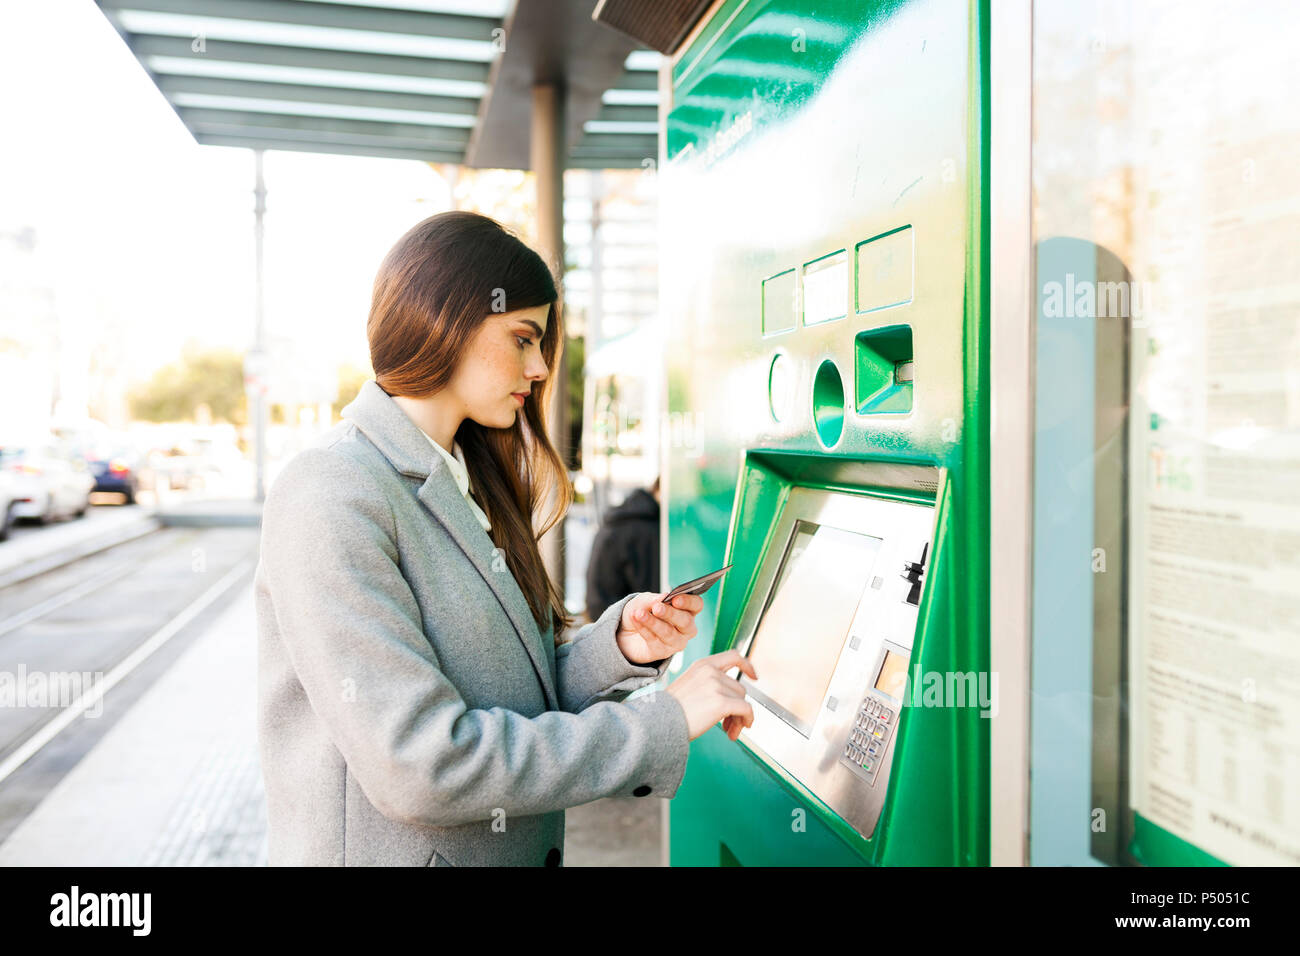 Spanien, Barcelona, Frau kauf Ticket von automatisierten Maschine am Bahnhof Stockfoto